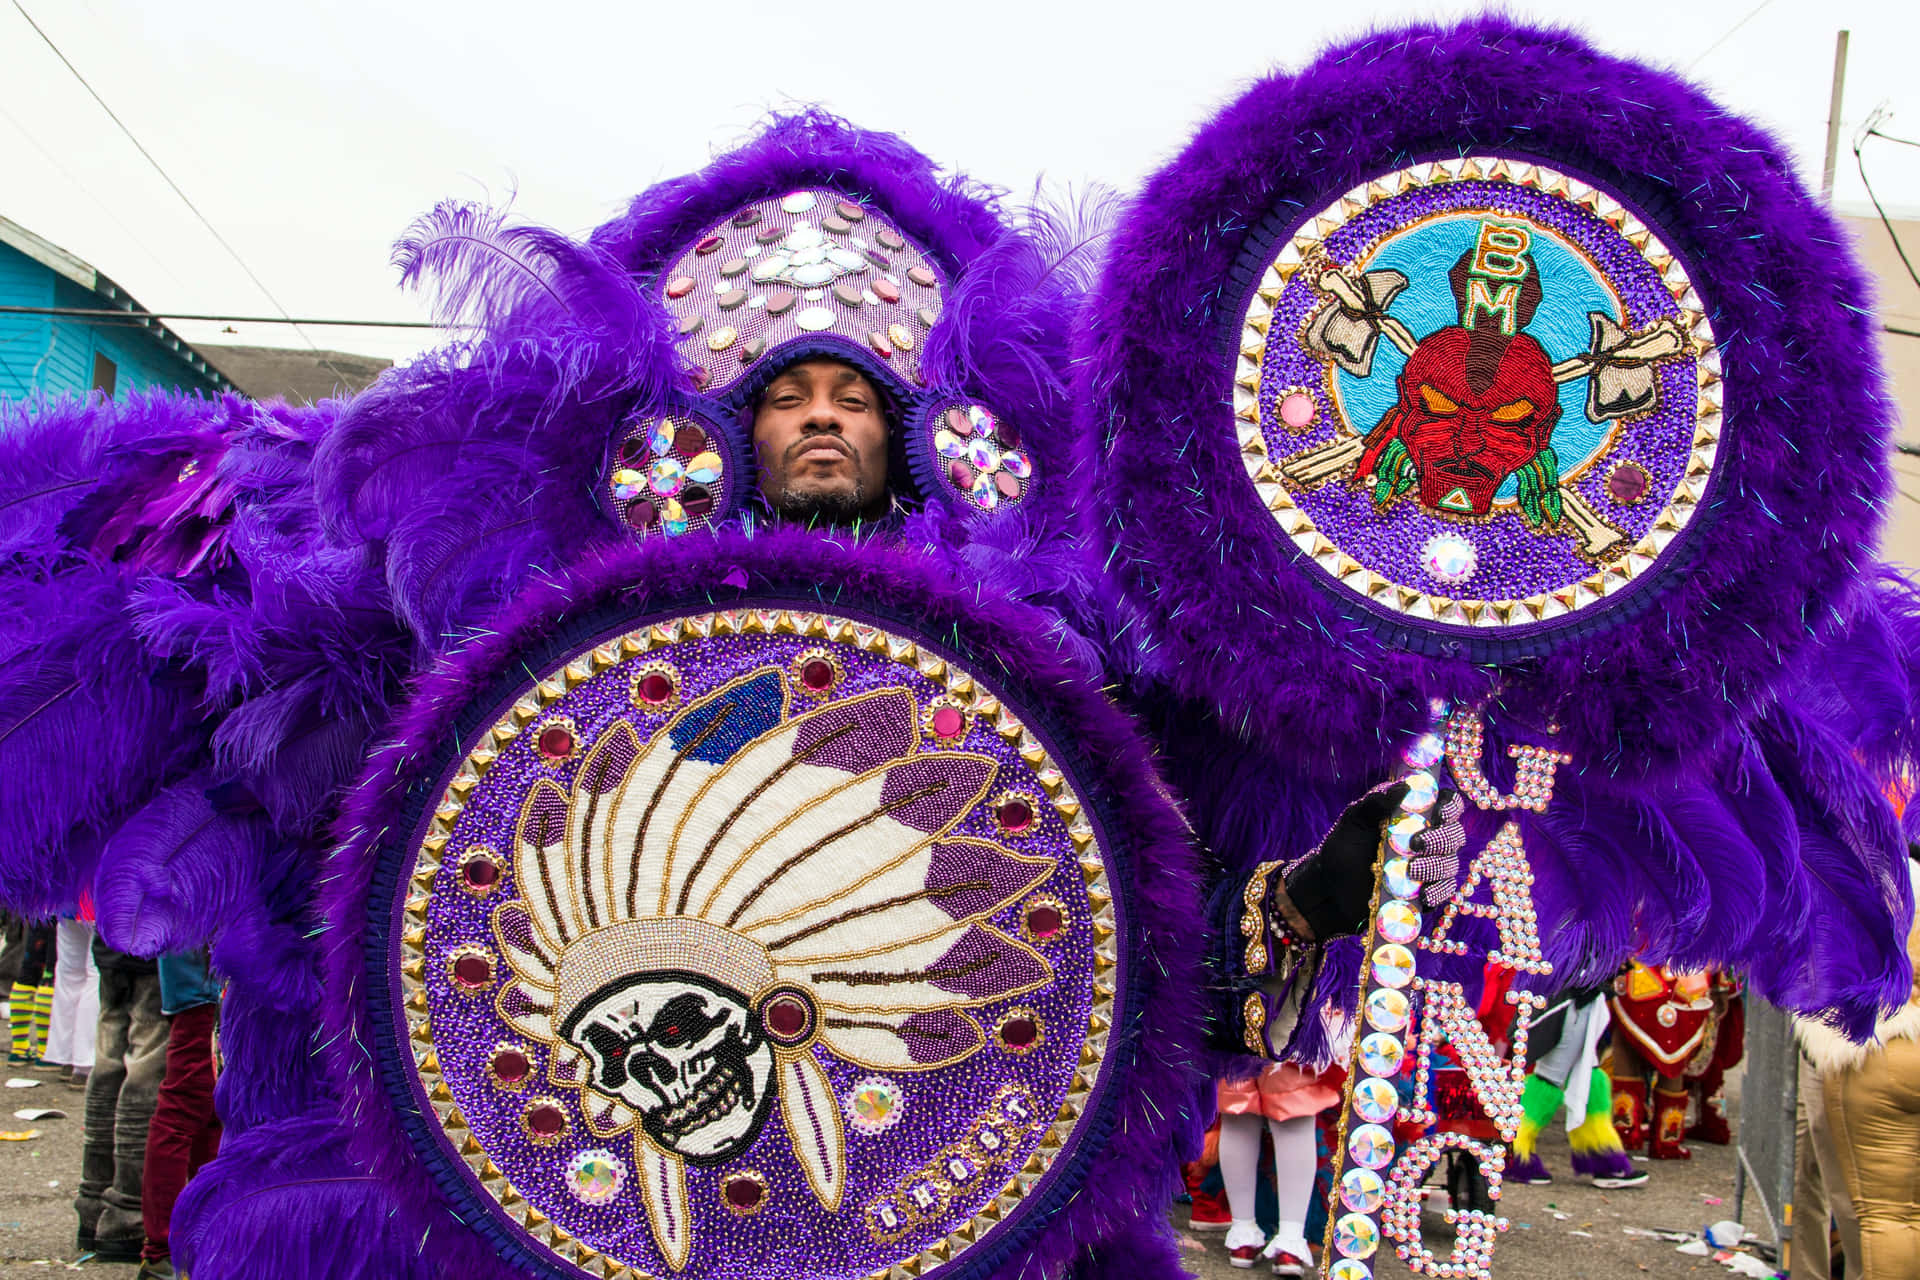 Festdeltagaredeltar I Mardi Gras-firandet I New Orleans